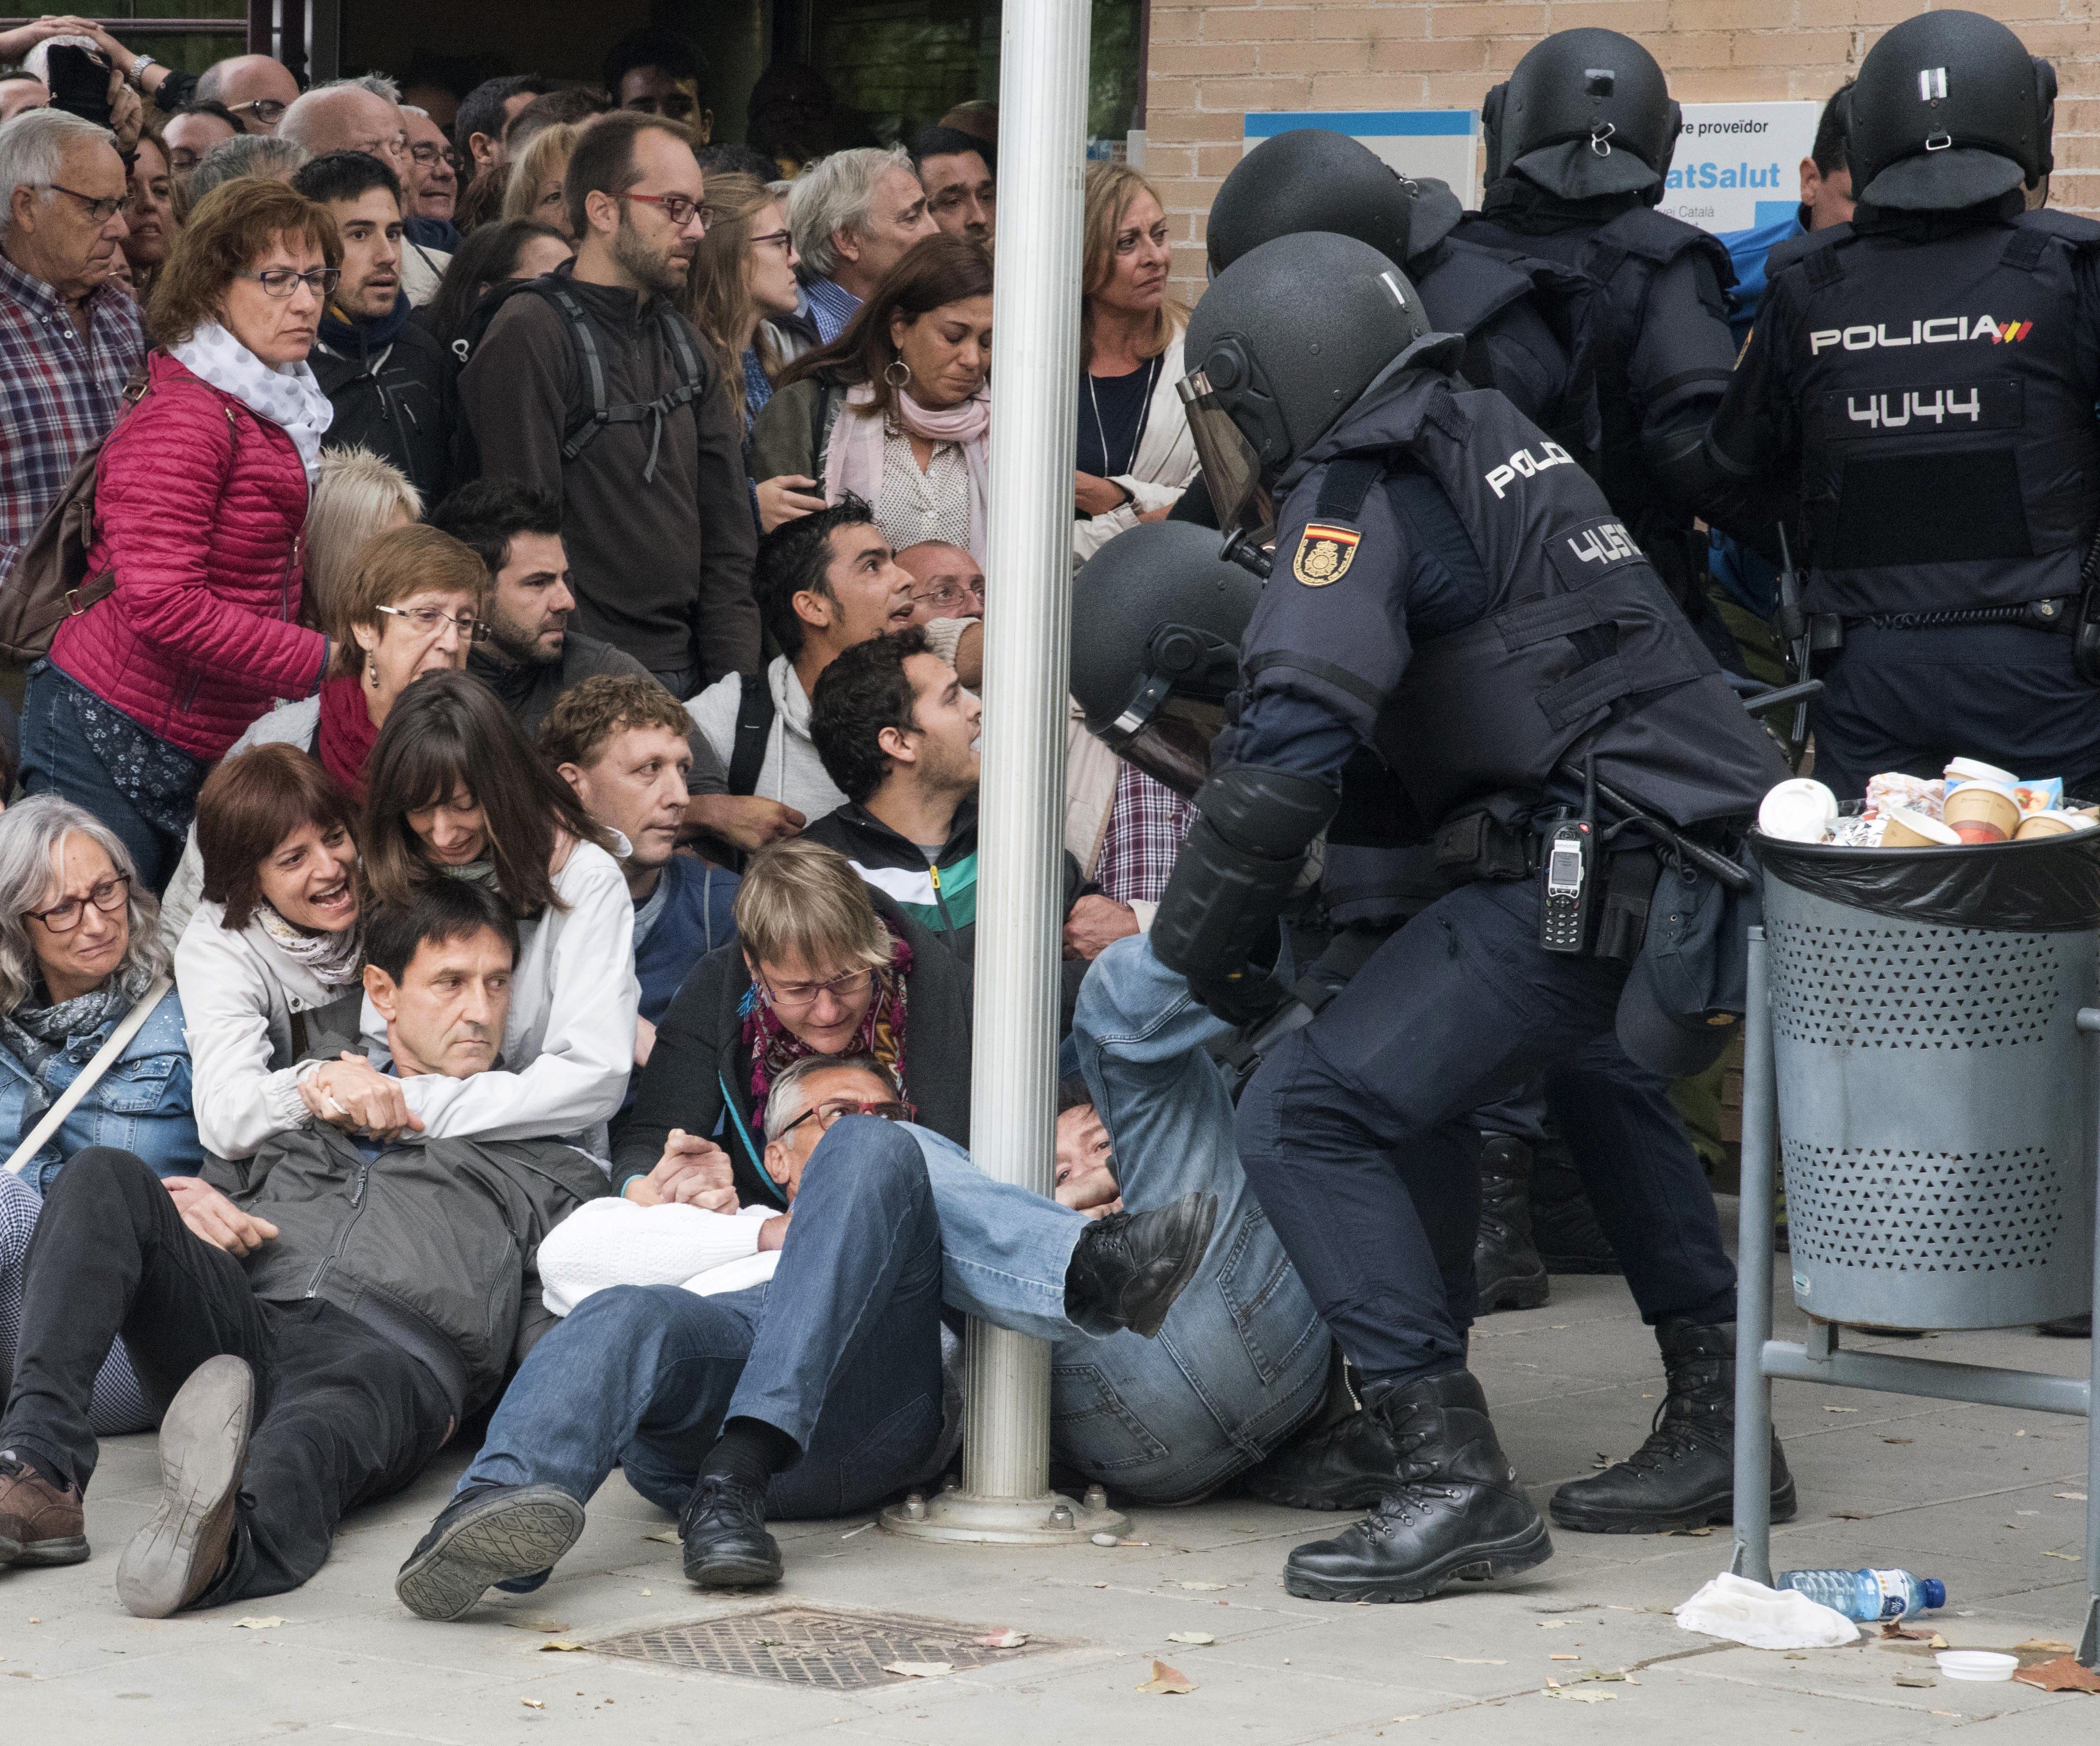 Tanca l'empresa catalana que va fer anuncis pro-abusos policials: "Que se joda"